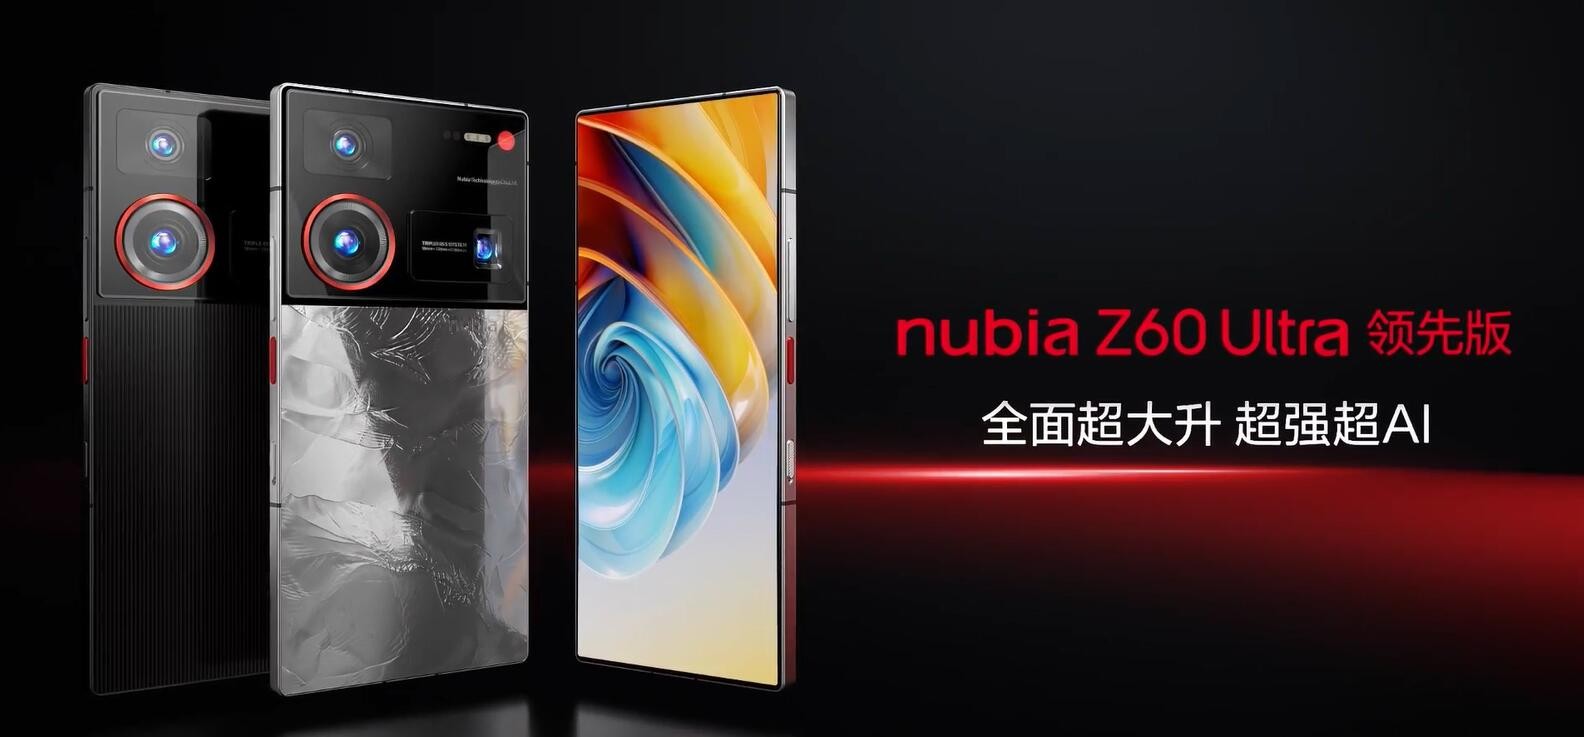 努比亚Z60 Ultra领先版售价4299元起